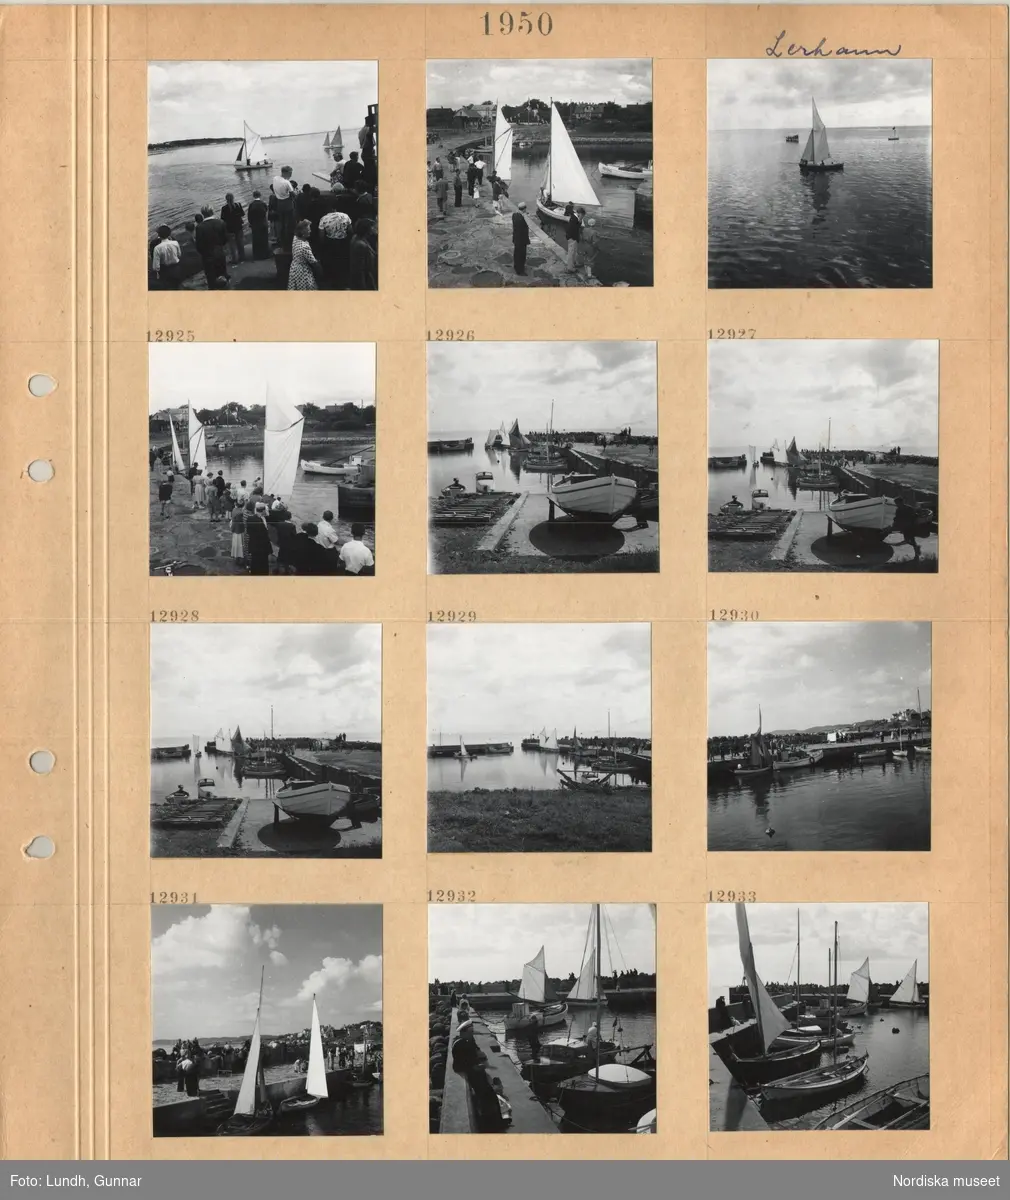 Motiv: Lerhamn, väntande personer på kaj, segelbåtar i vattnet, uppdragen båt, båtar förtöjda vid kaj.